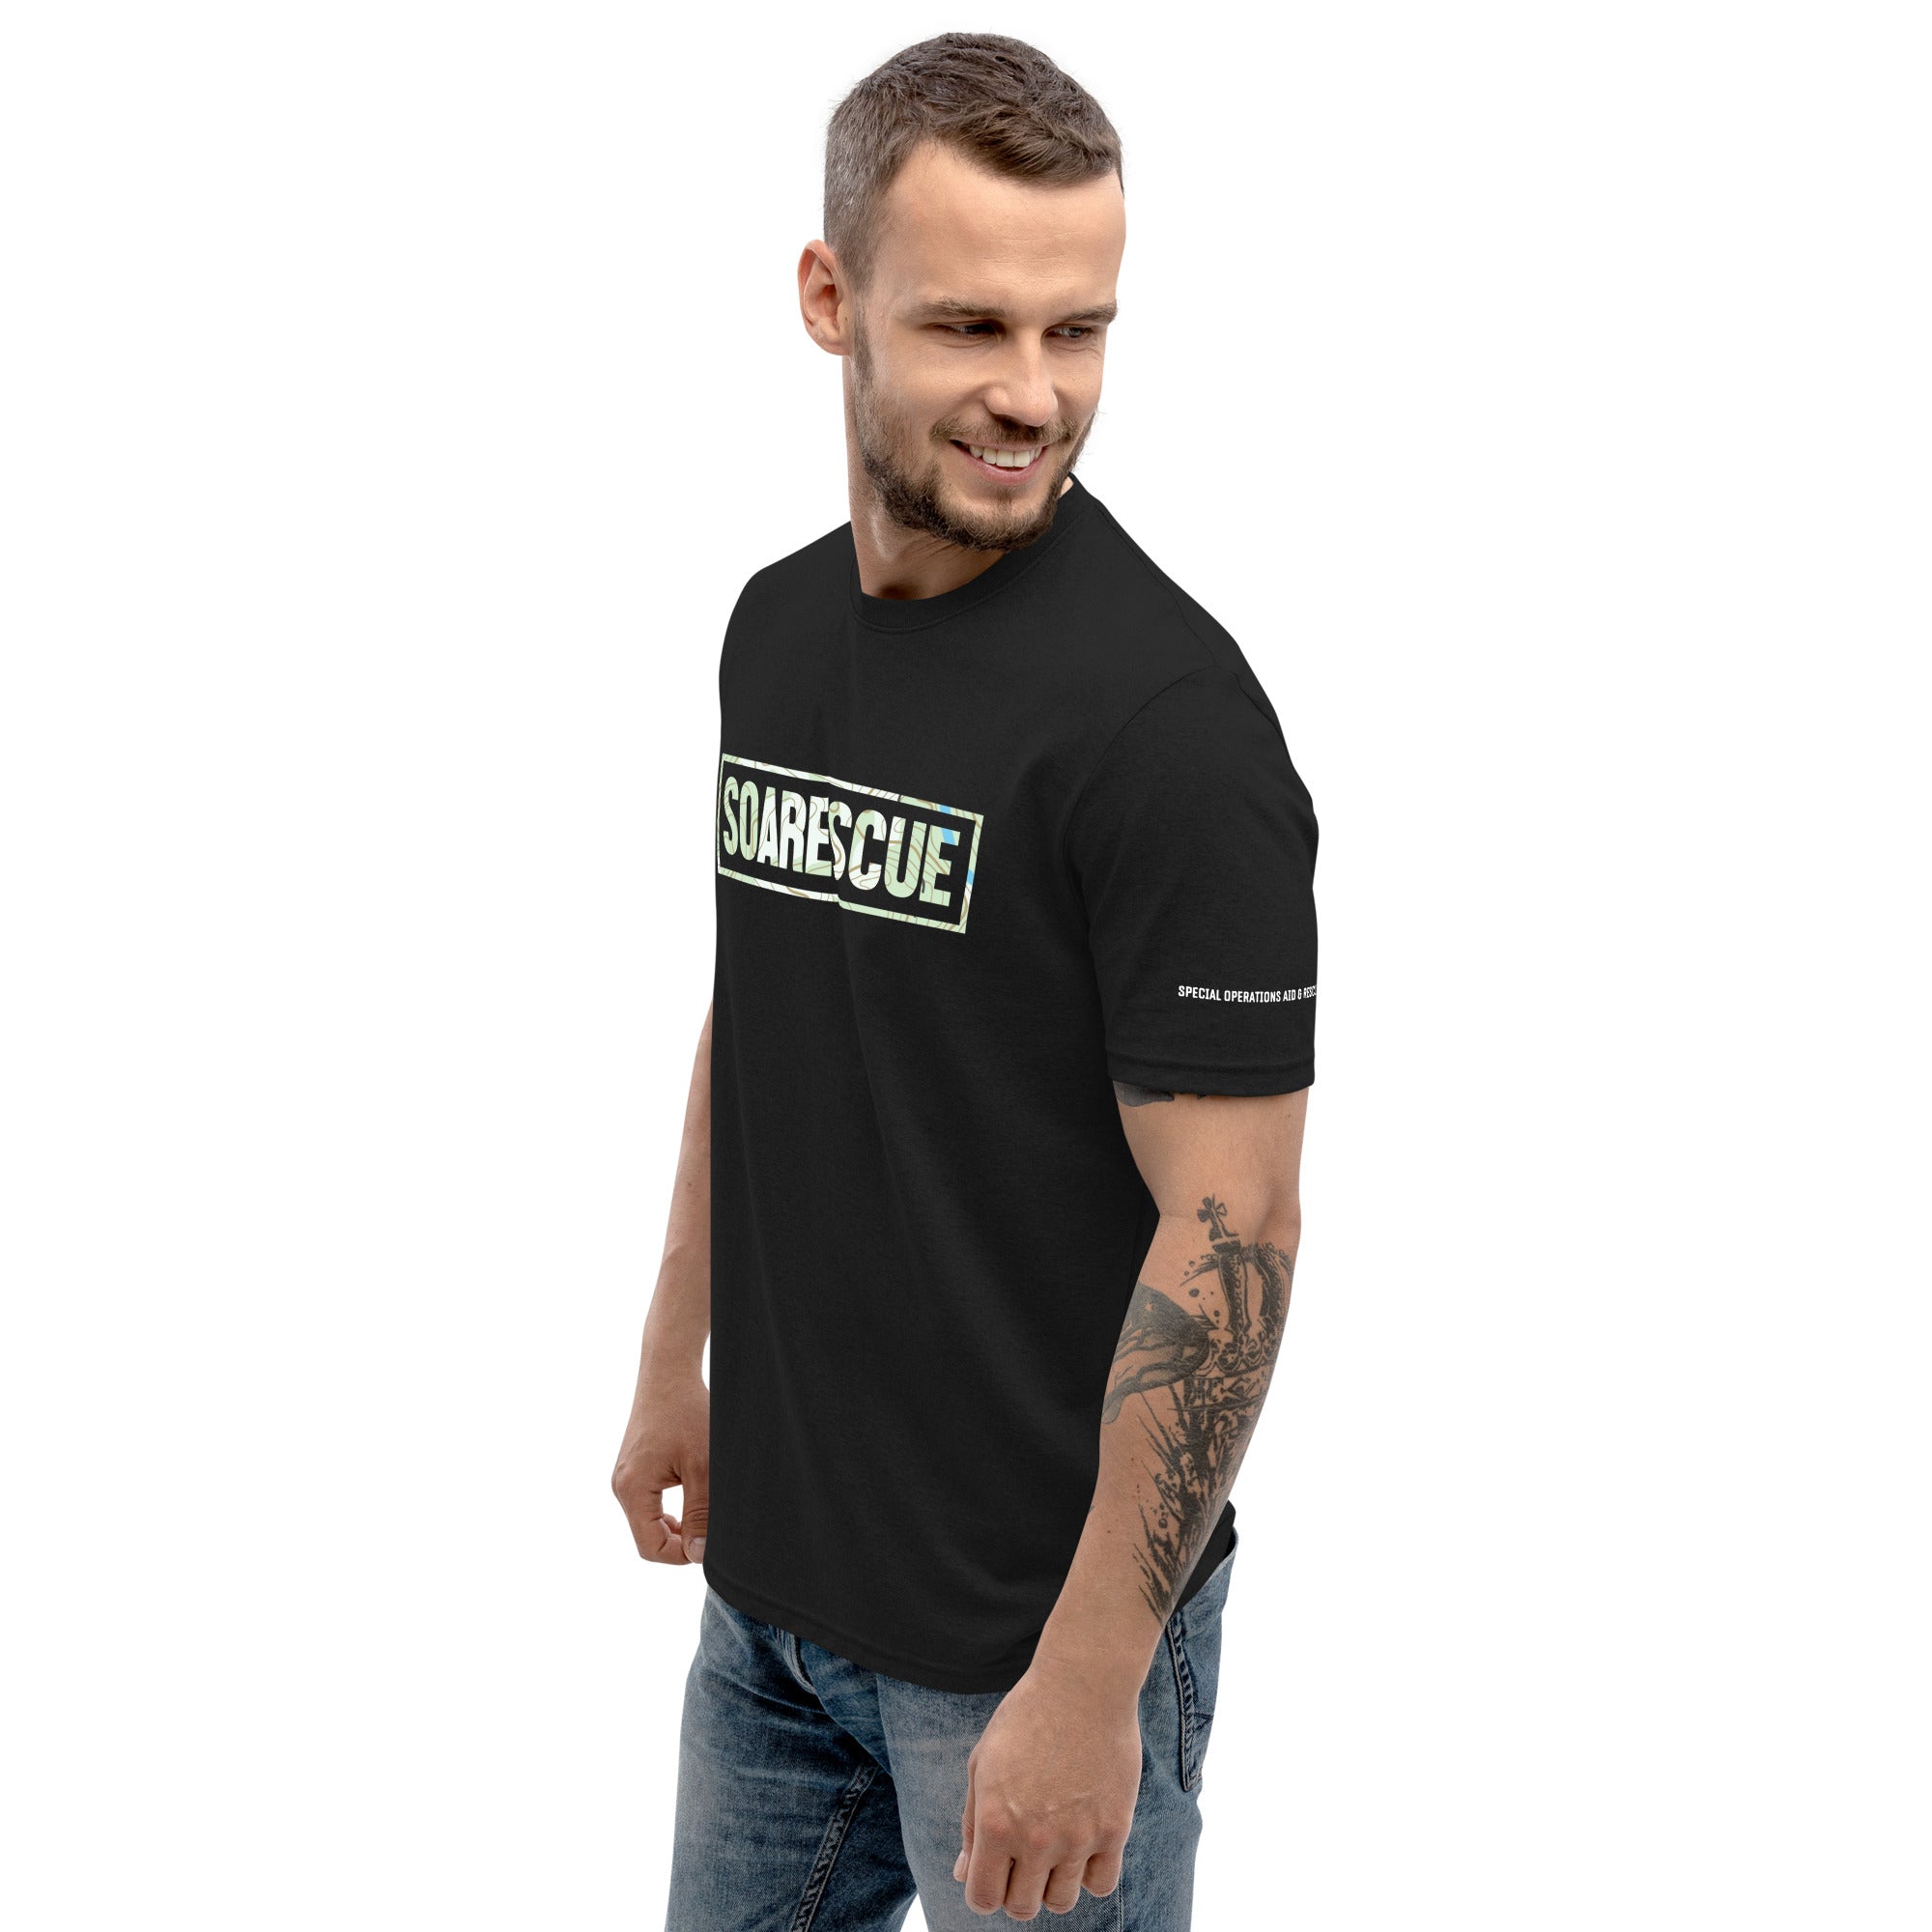 SOARescue T-shirt - SOARescue